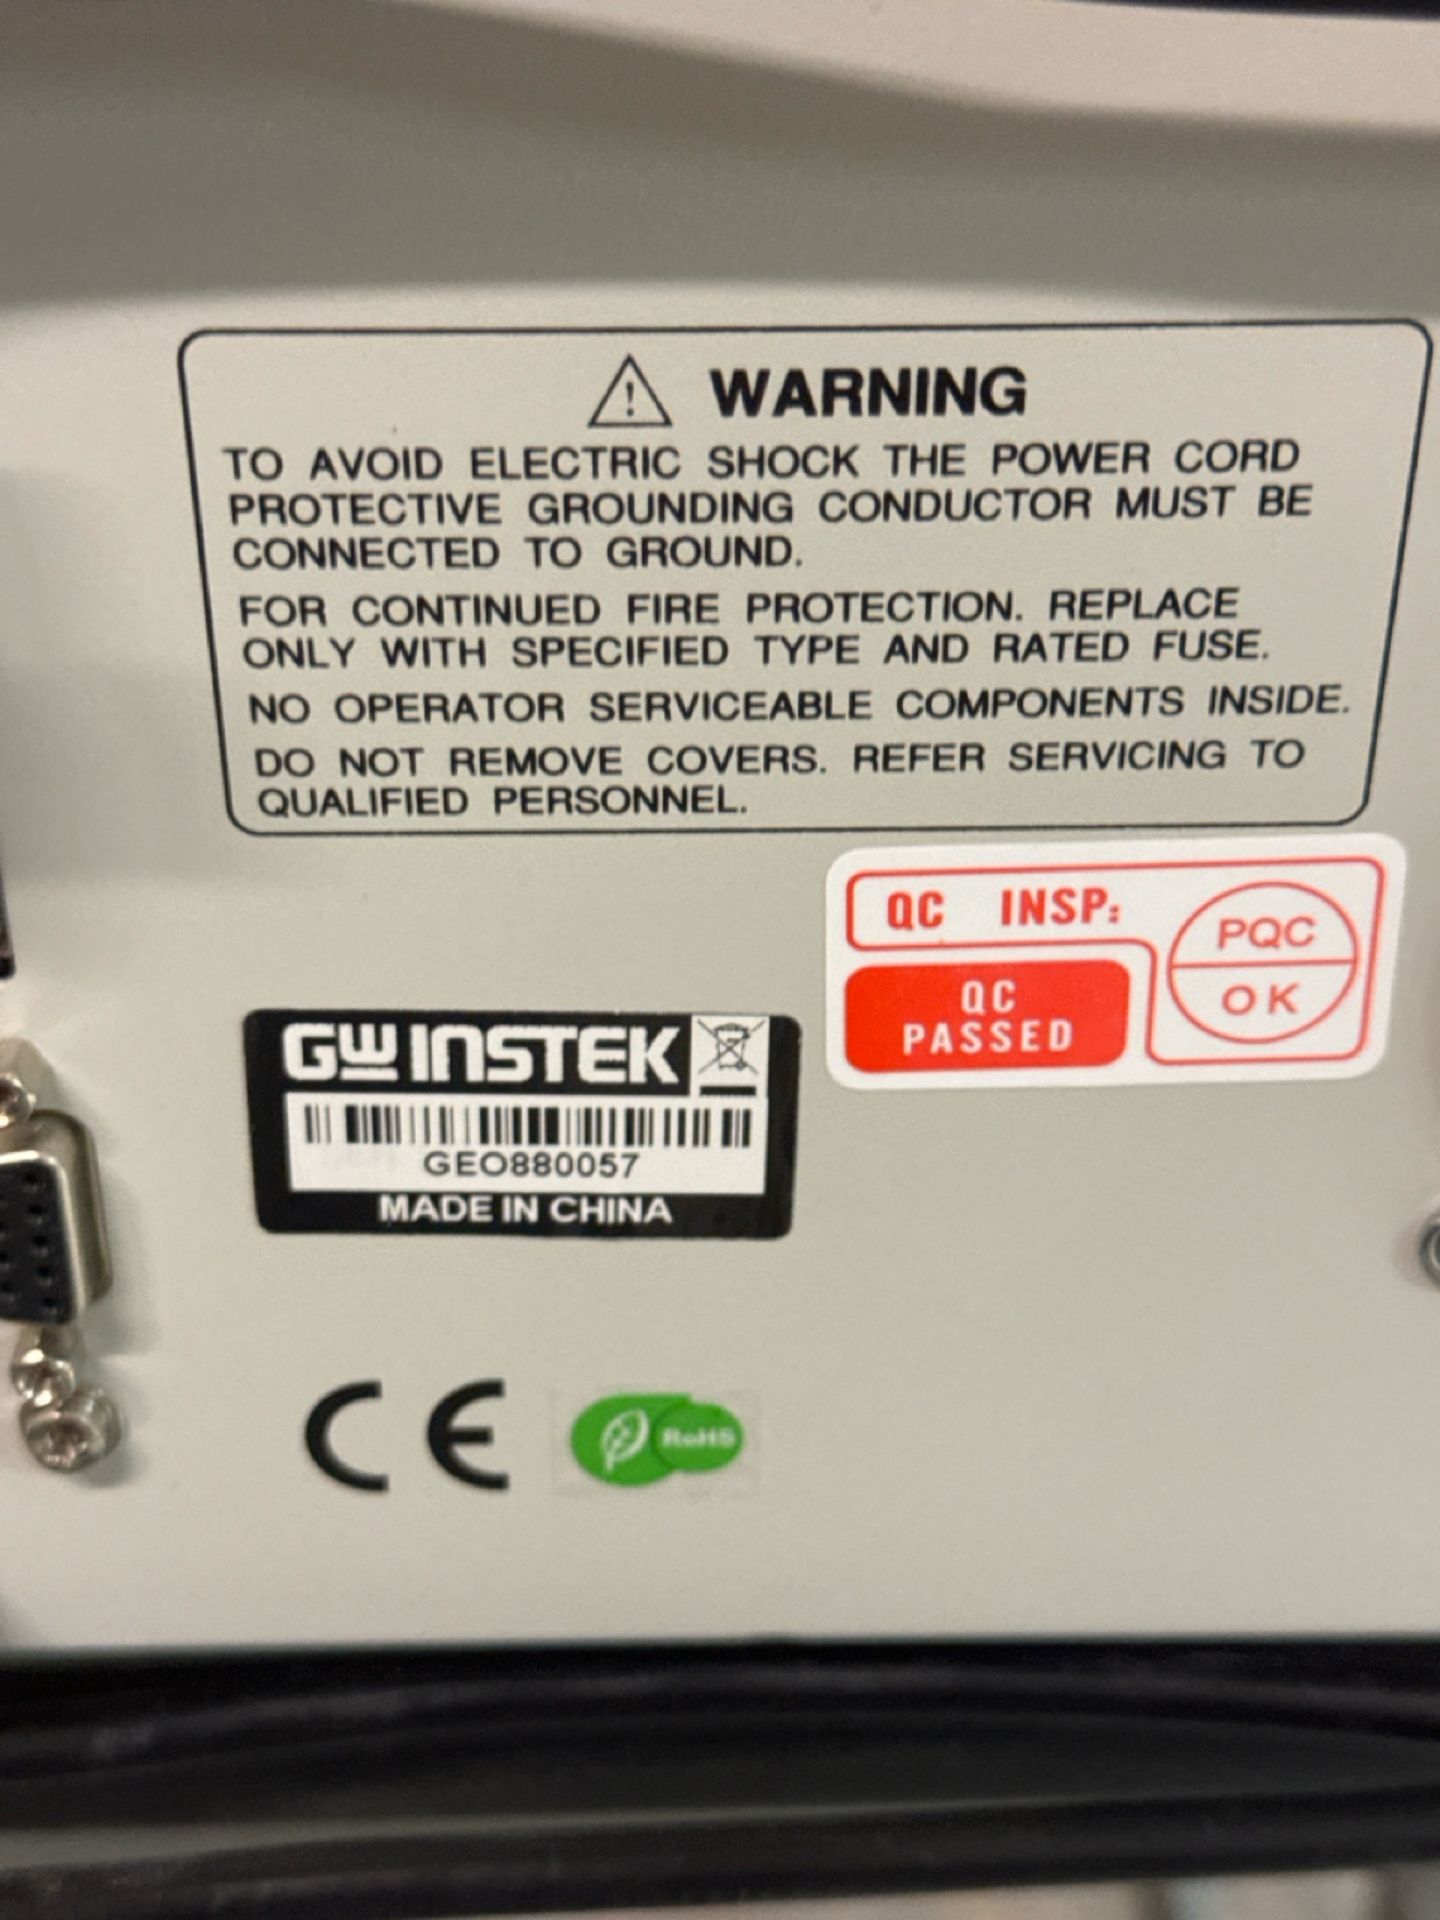 Gwinstek GPT-9603 Tester - Image 4 of 4